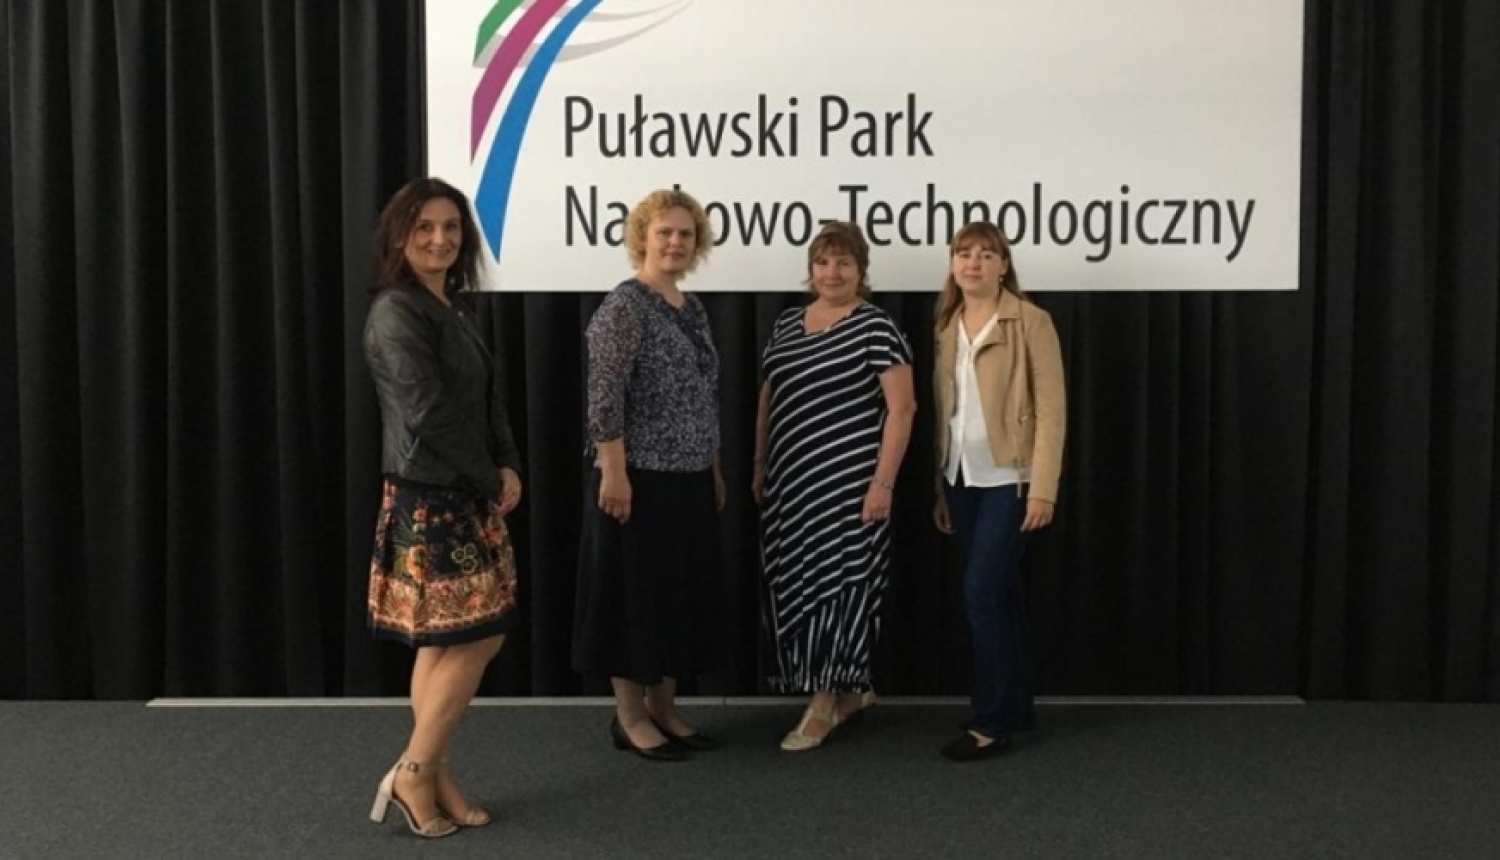 Šķibes pamatskolas pedagogi pilnveido savas profesionālās zināšanas un apmainās ar labās prakses piemēriem partneristitūcijā Polijā